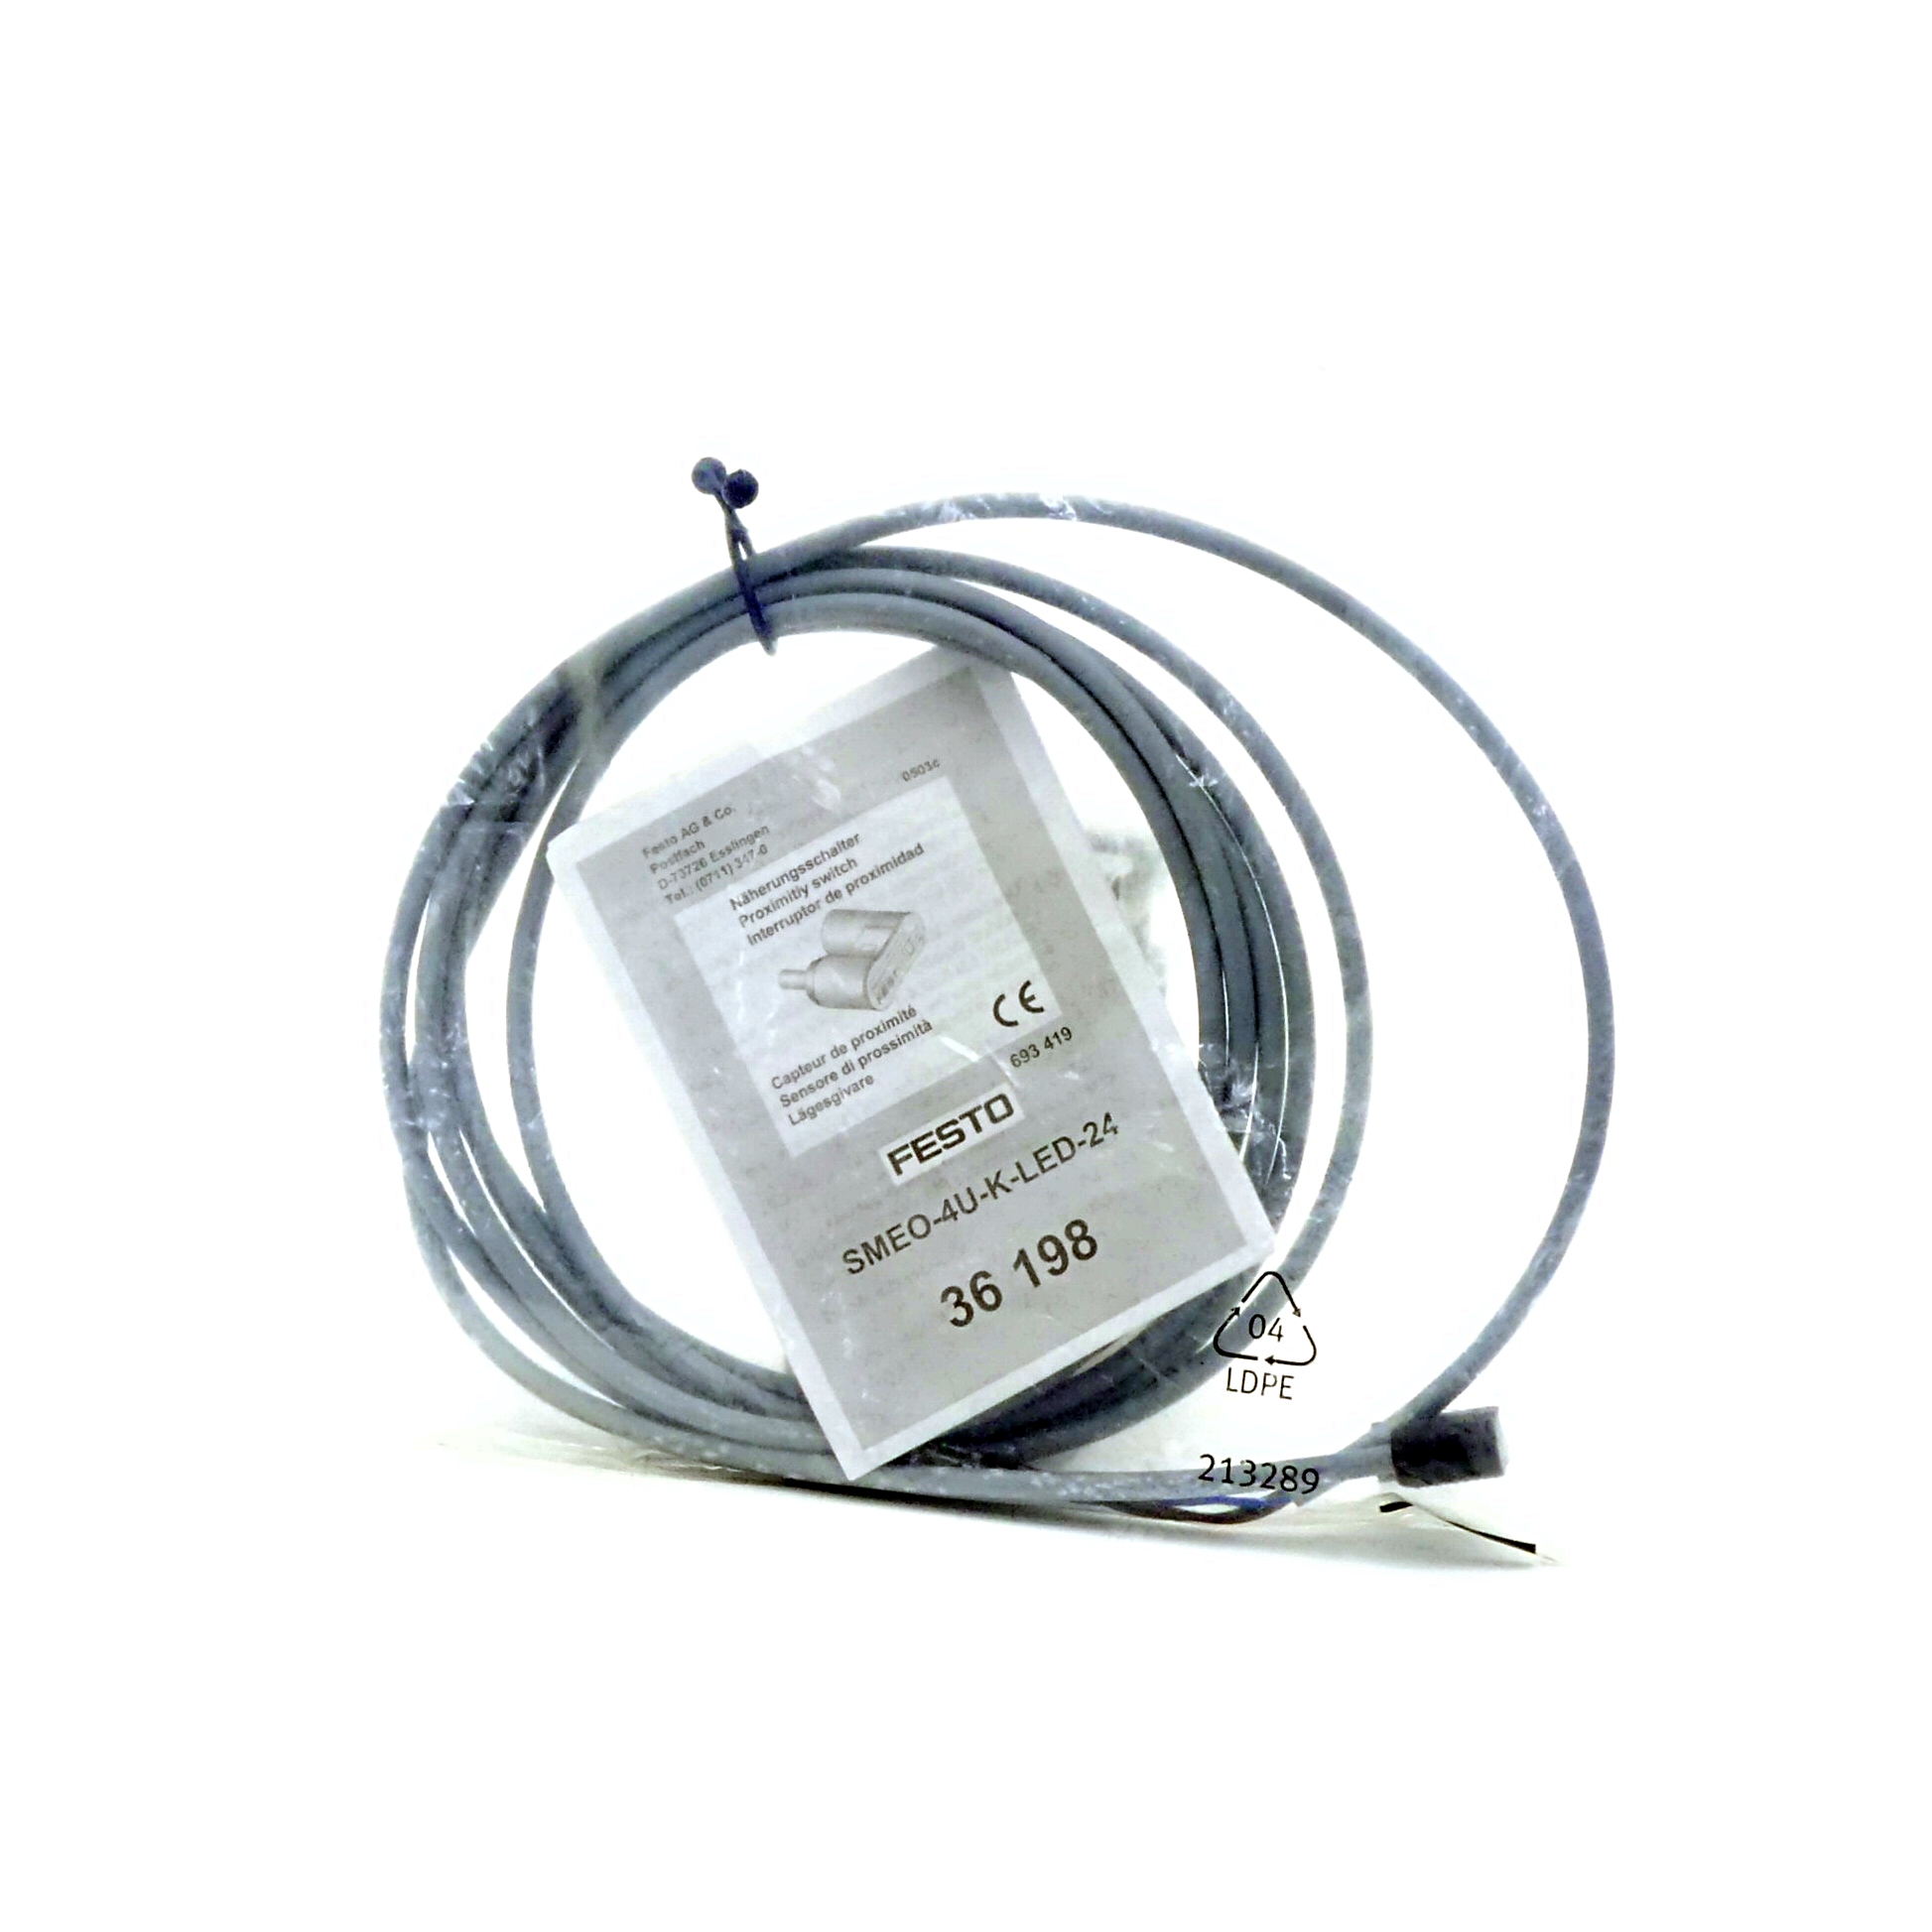 Näherungsschalter SMEO-40-K-LED-24 